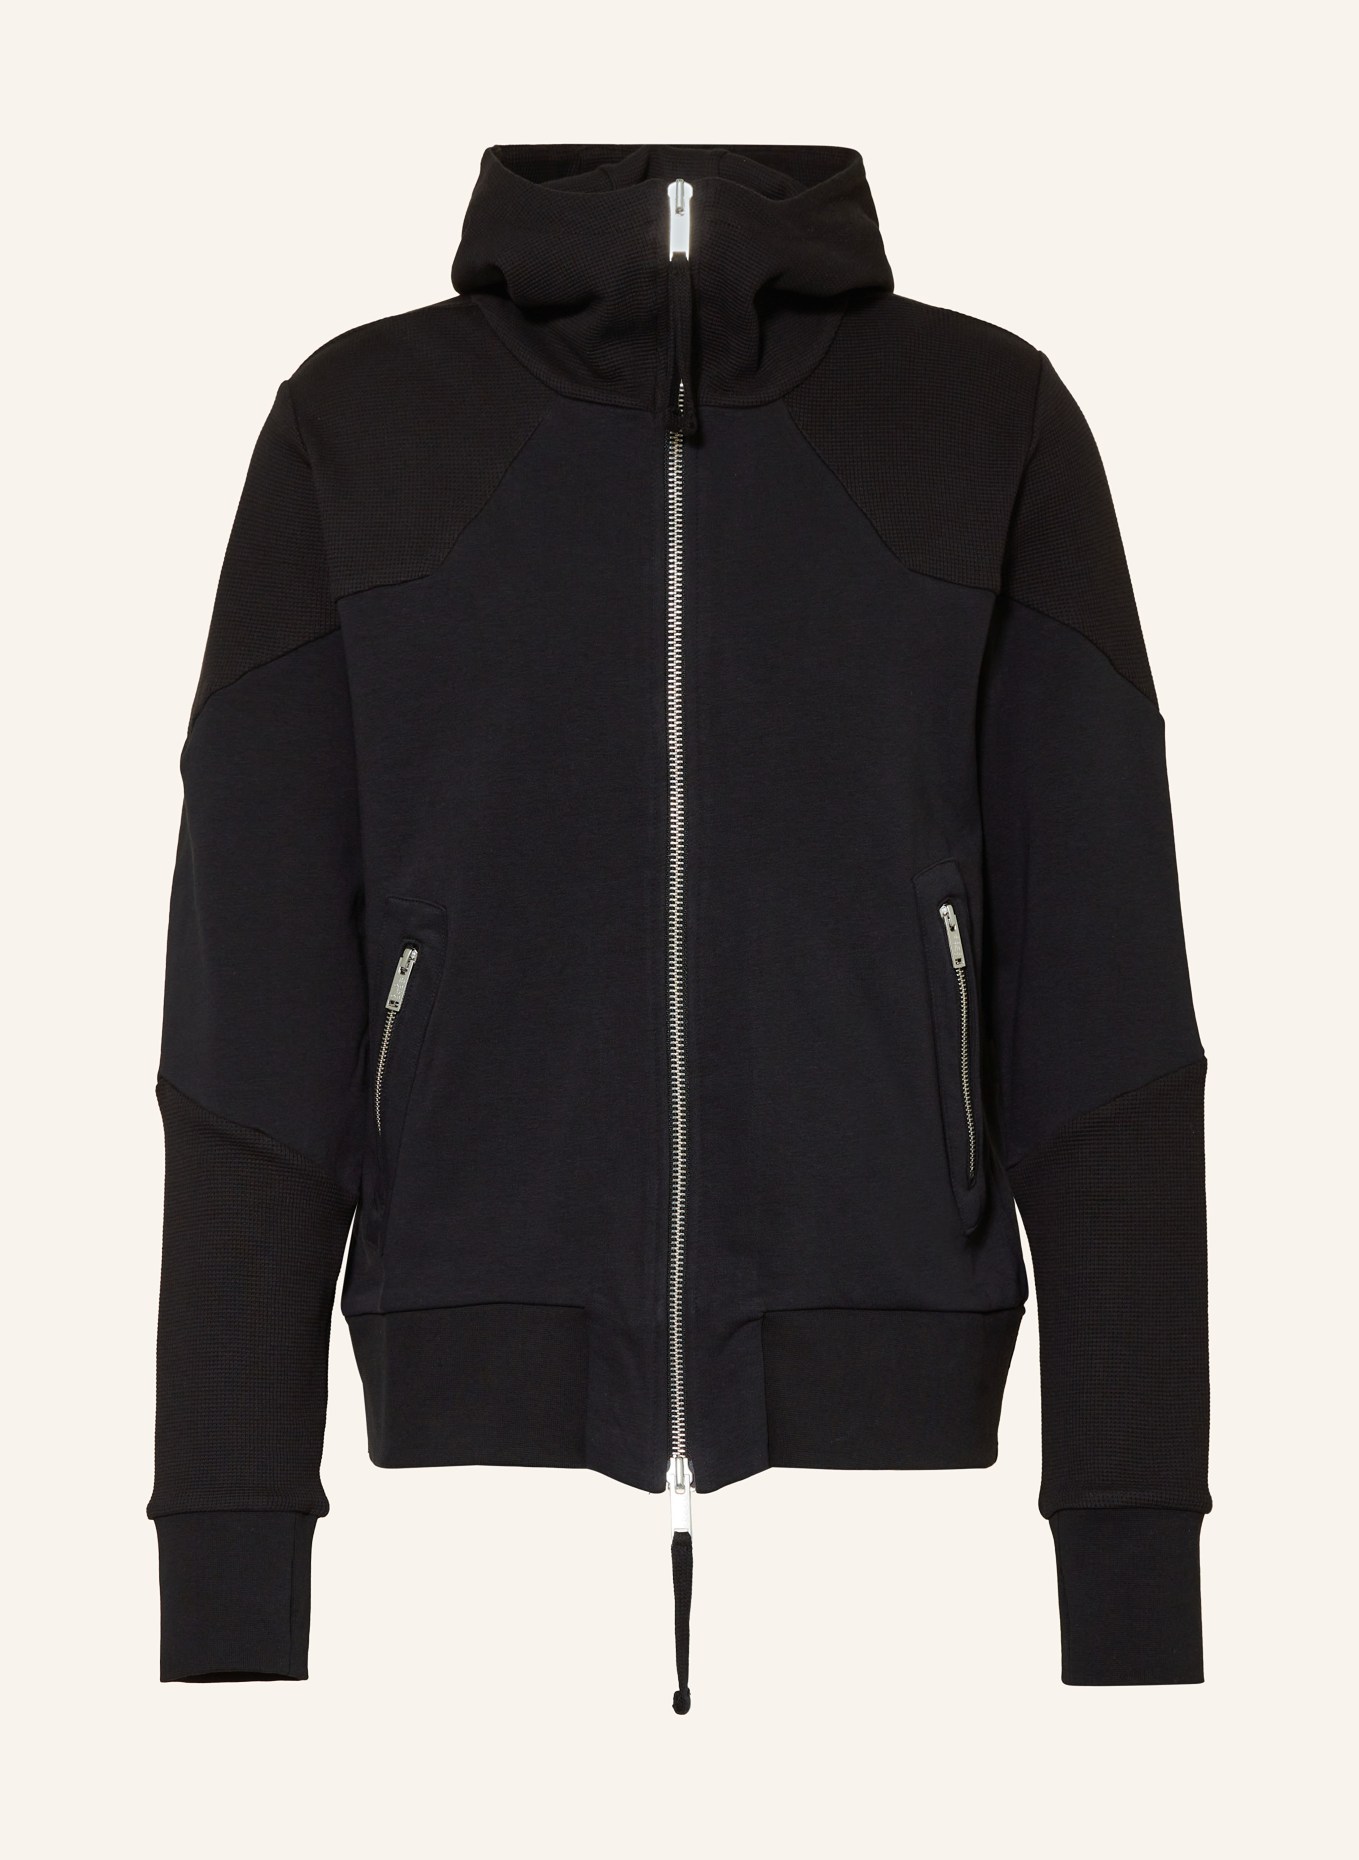 thom/krom Sweat jacket, Color: BLACK (Image 1)